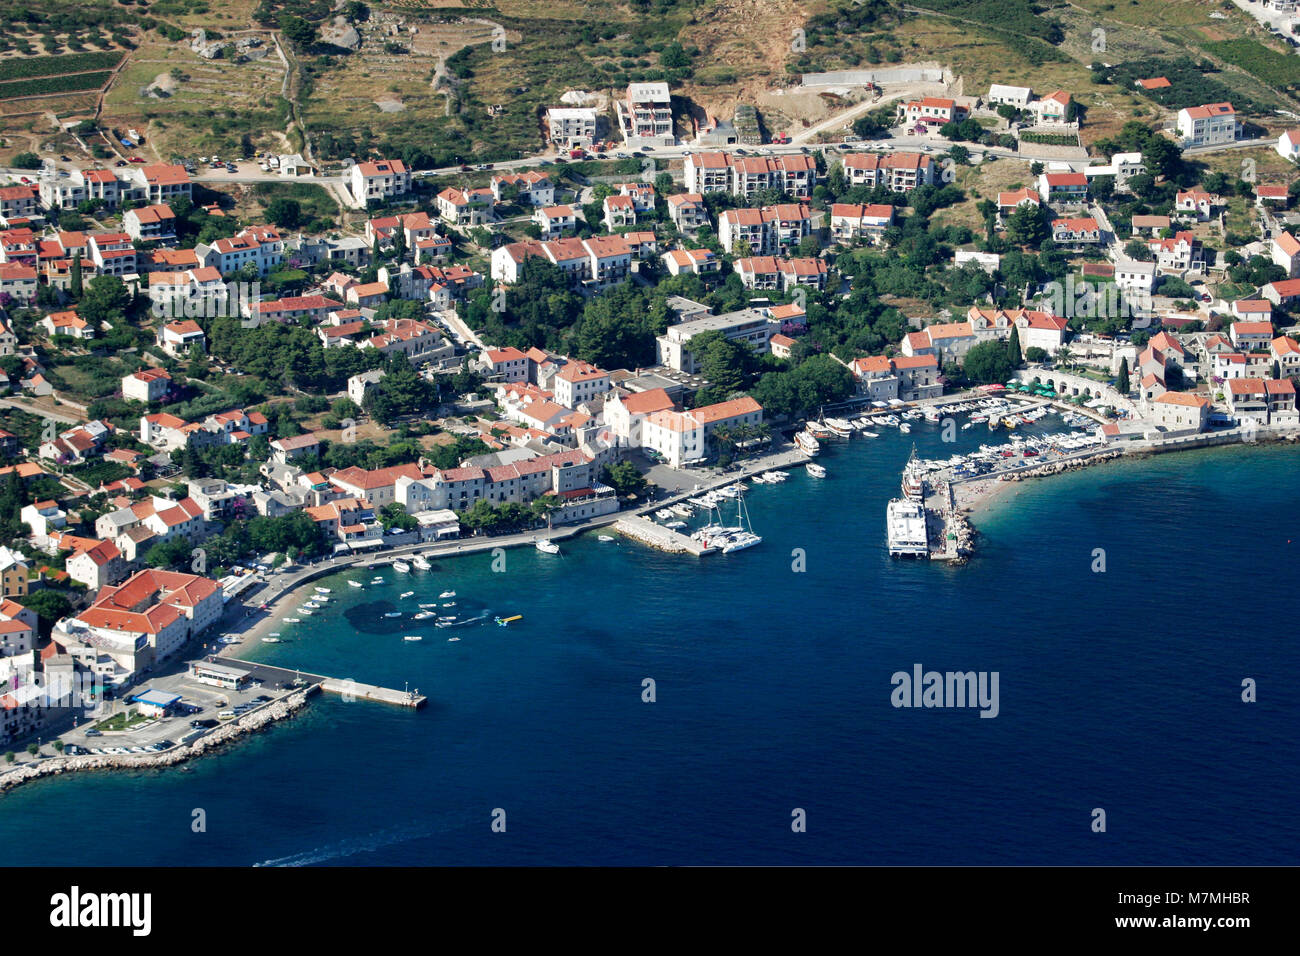 Village Bol sur l'île de Brac, célèbre lieu touristique en Croatie Banque D'Images